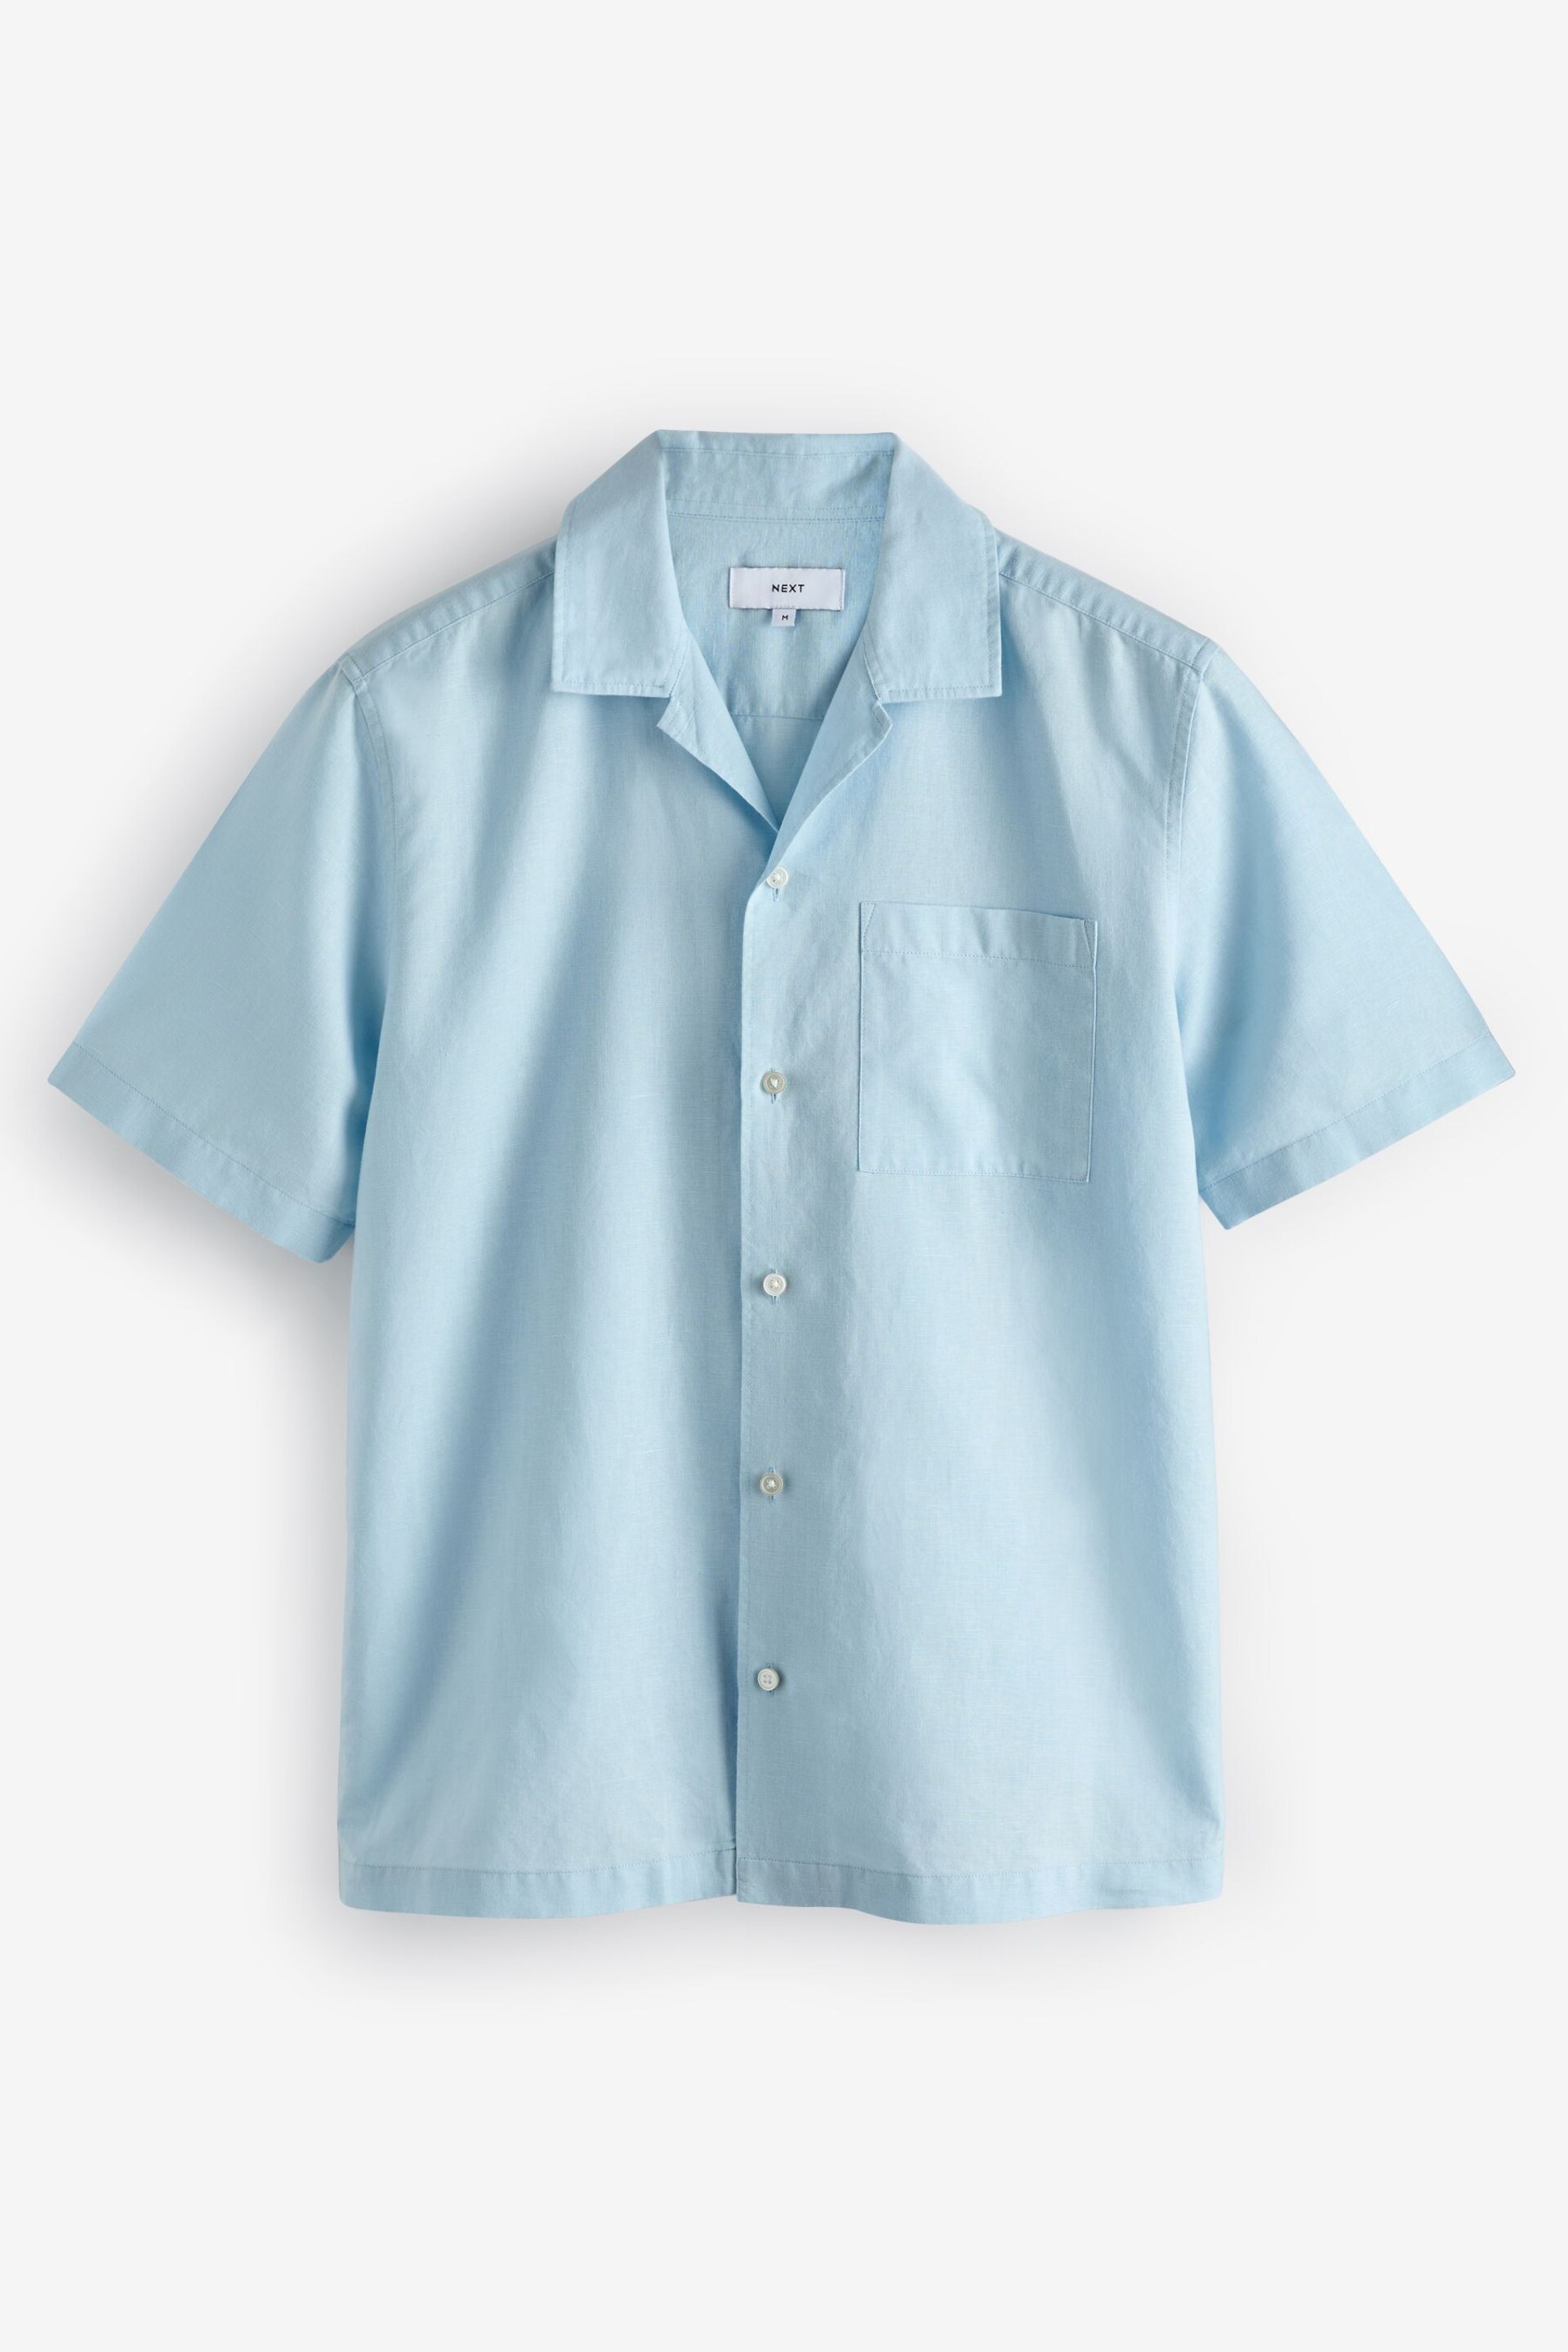 Light Blue Cuban Collar Linen Blend Short Sleeve Shirt - Image 5 of 7